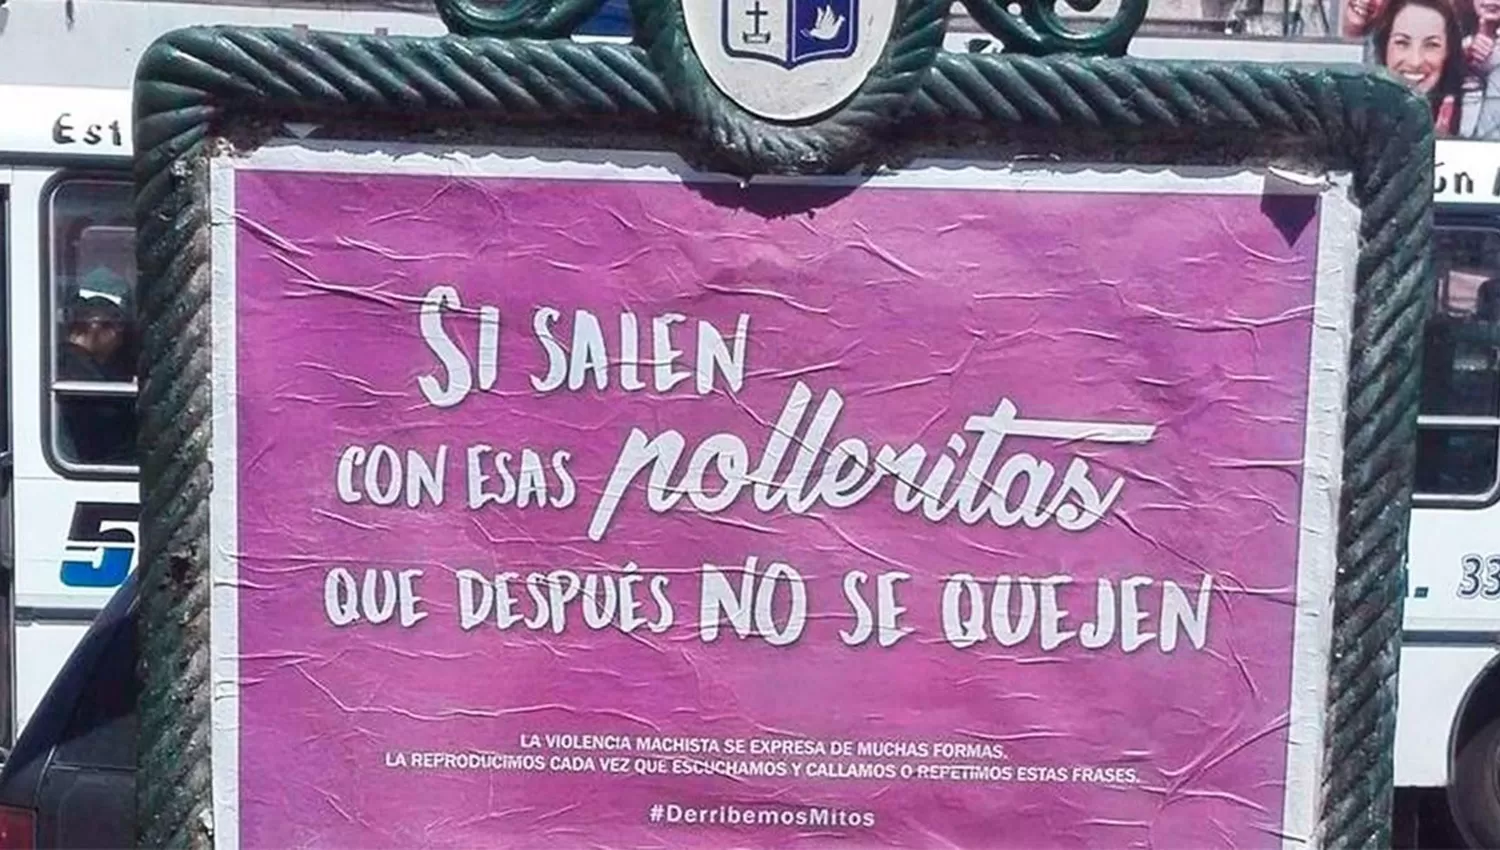 Uno de los carteles que produjo polémica en el municipio de Pilar, en Buenos Aires. FOTO TOMADA DE INFOBAE.COM